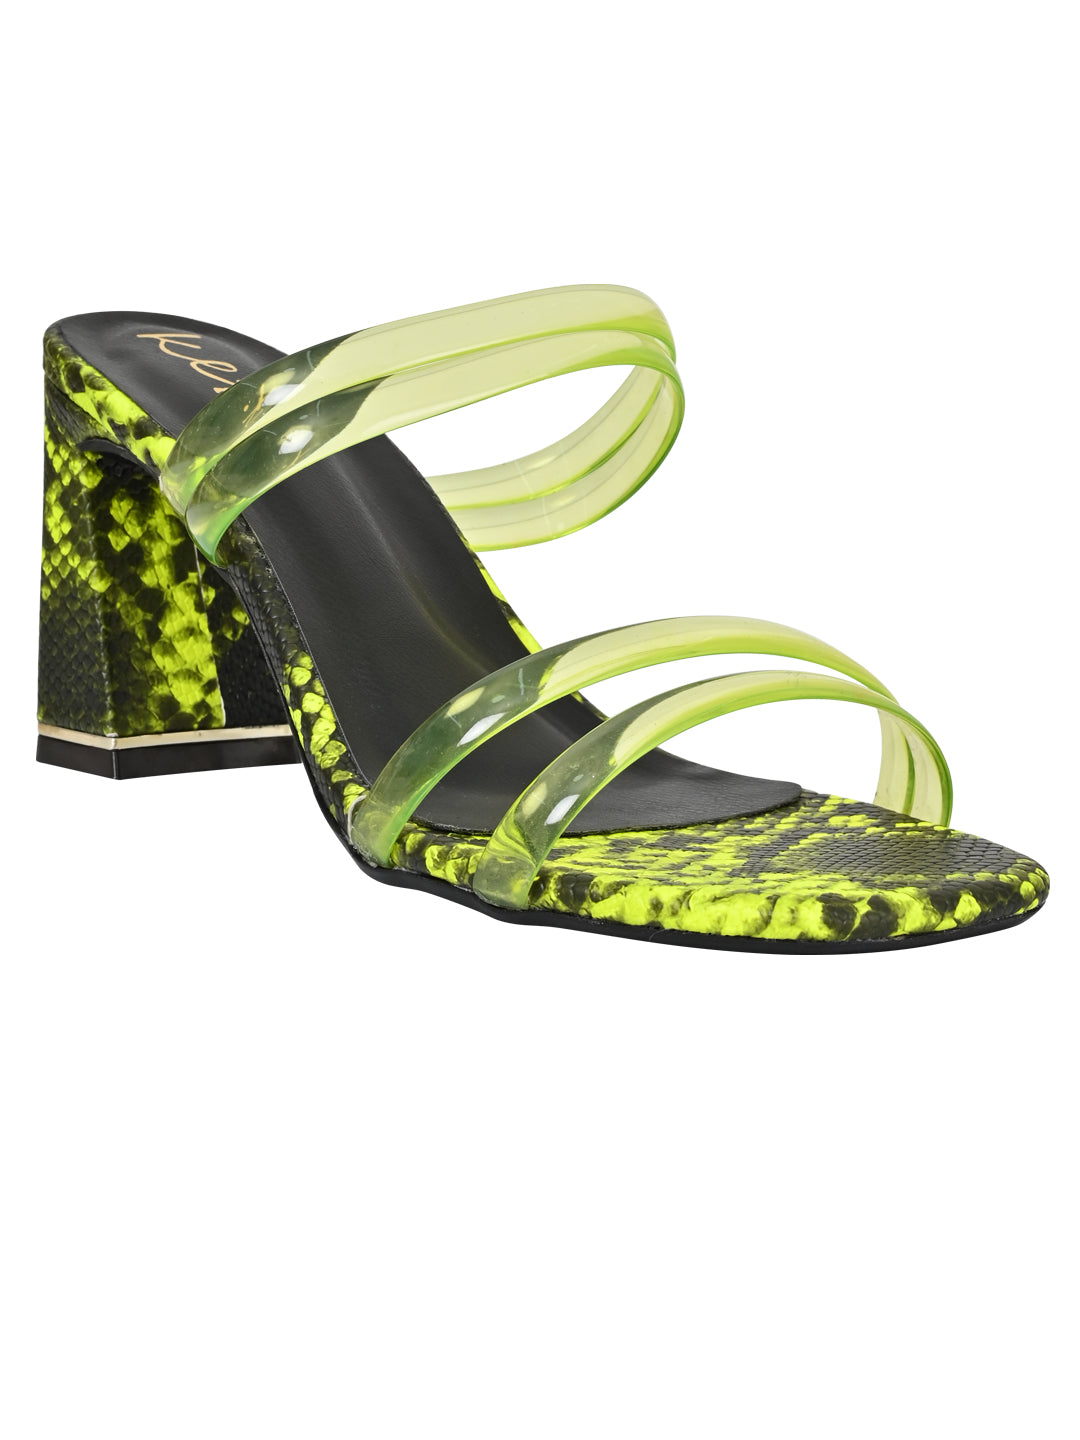 Footwear, Women Footwear, Fluorescent Green Sandals